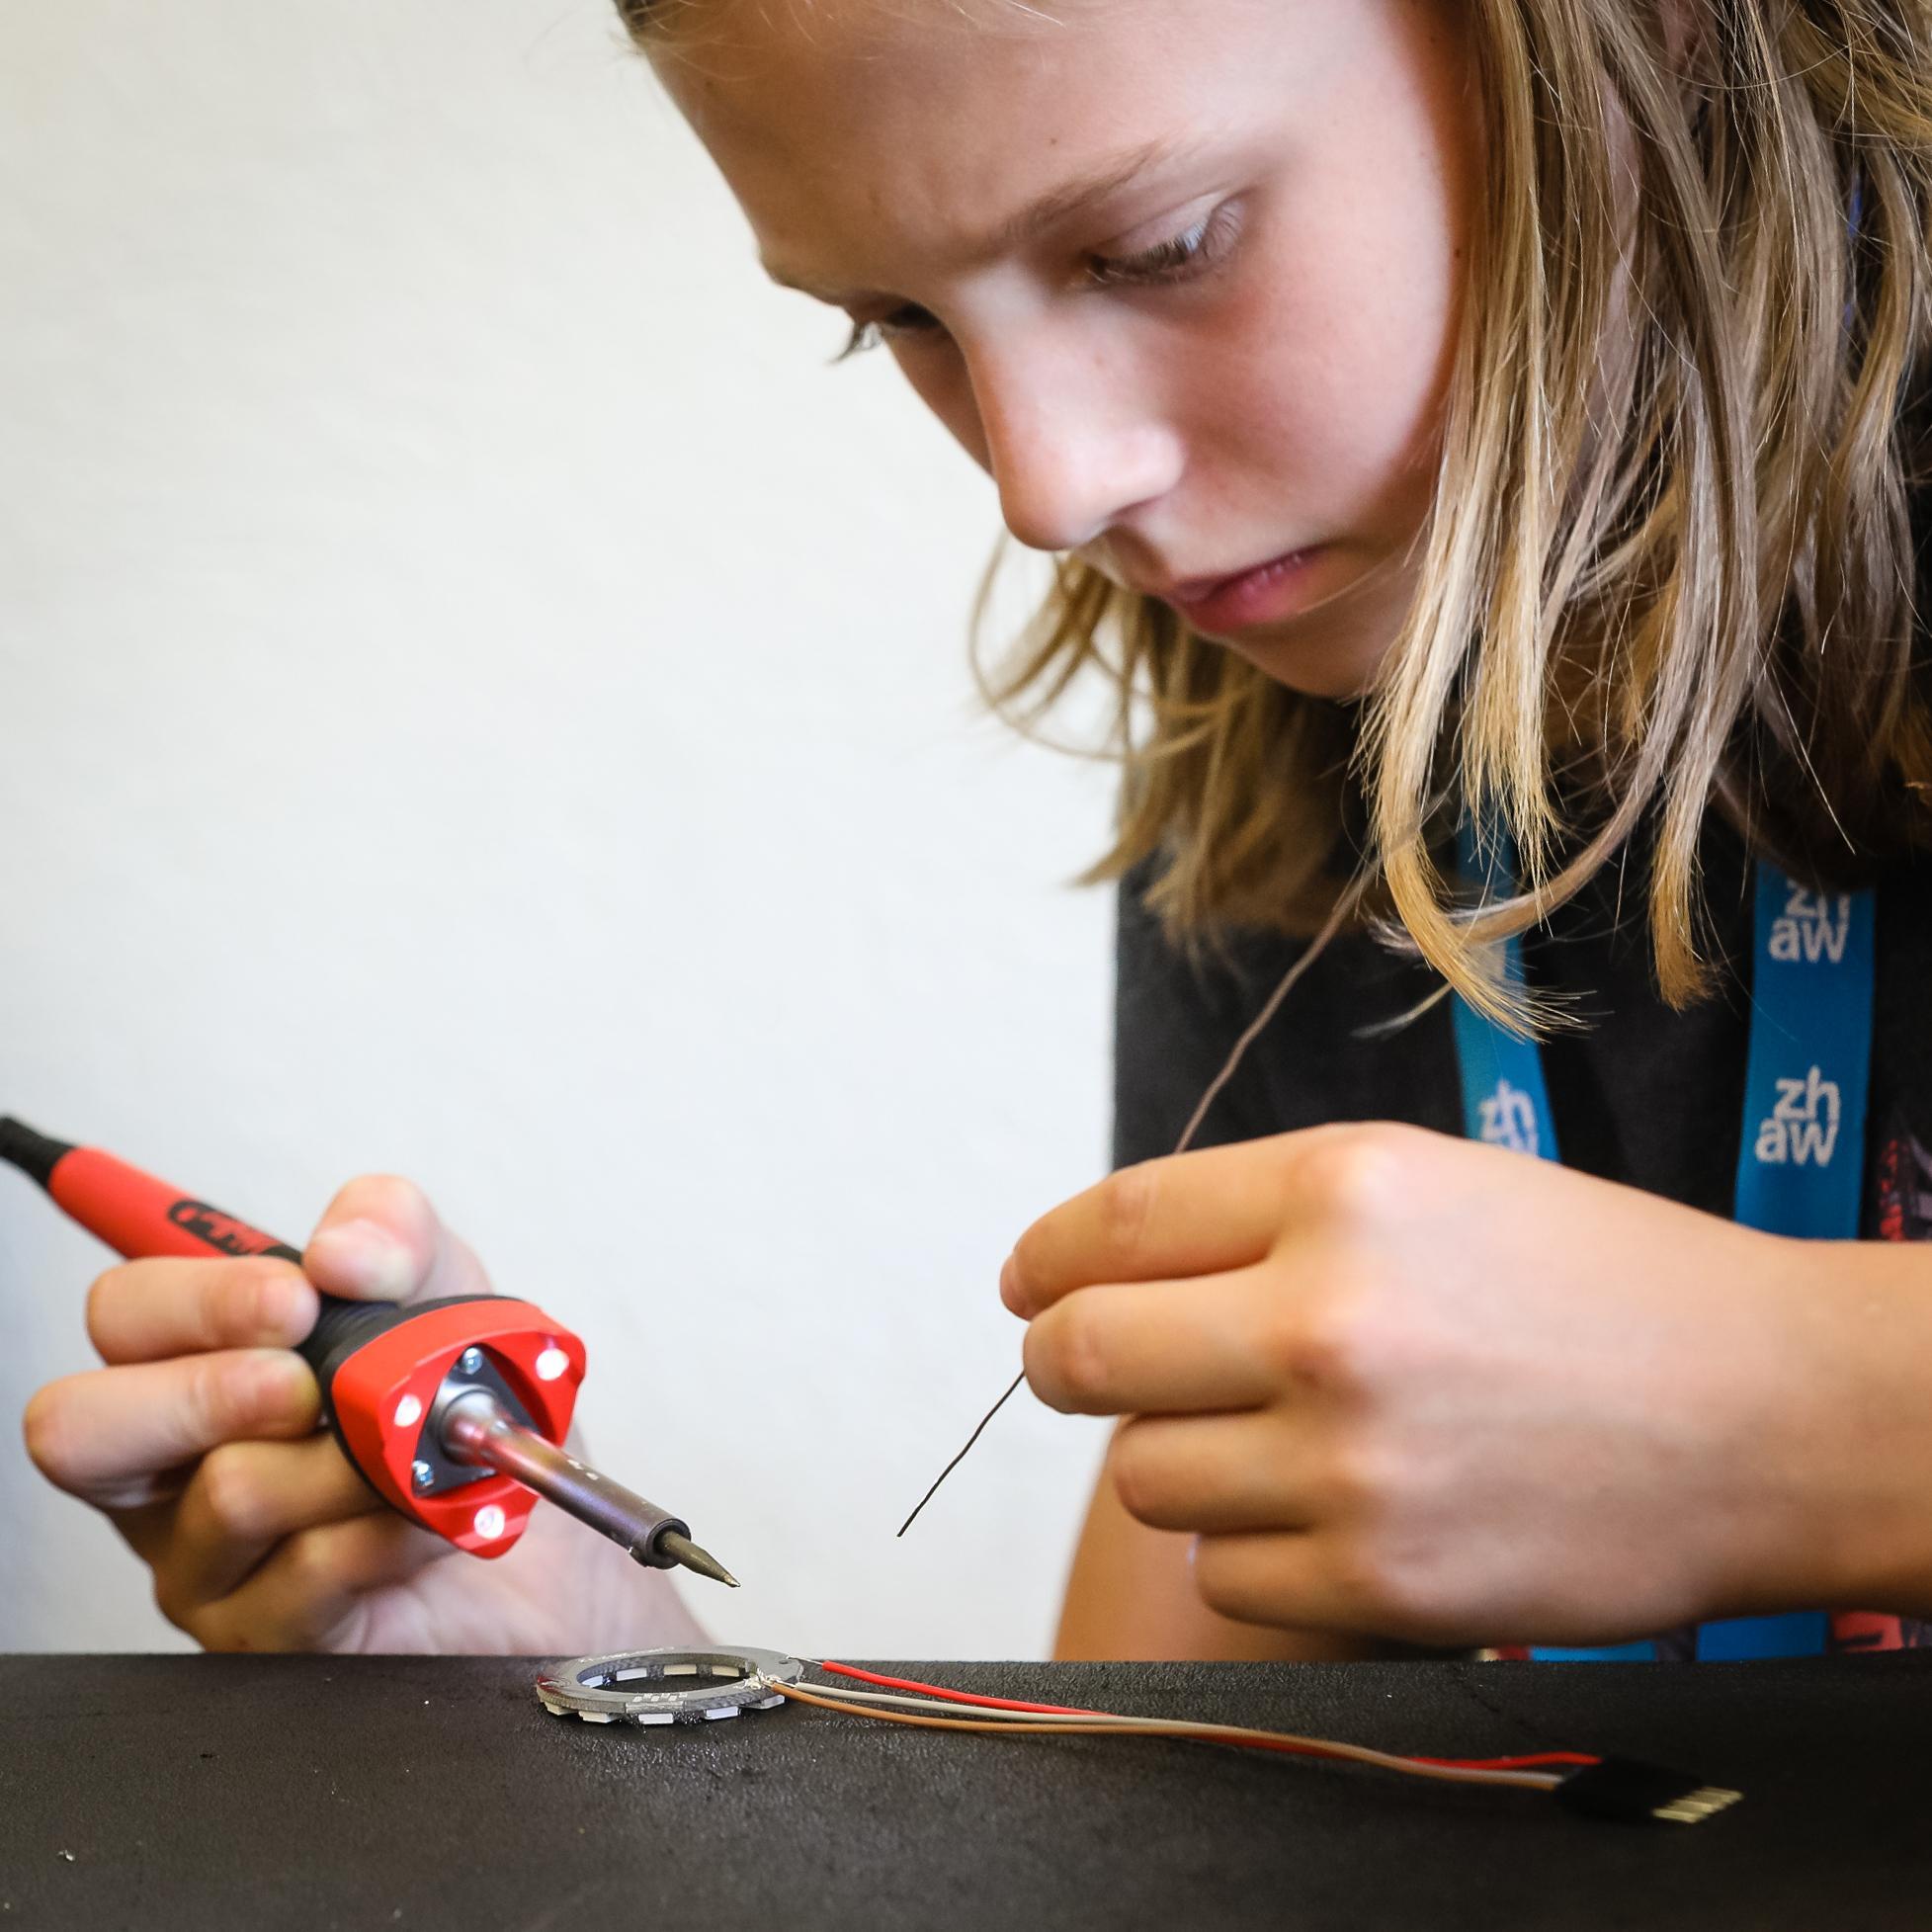 Foto von der Herstellen des LightBags: 
                        Mädchen lötet Kabel an LED-Ring